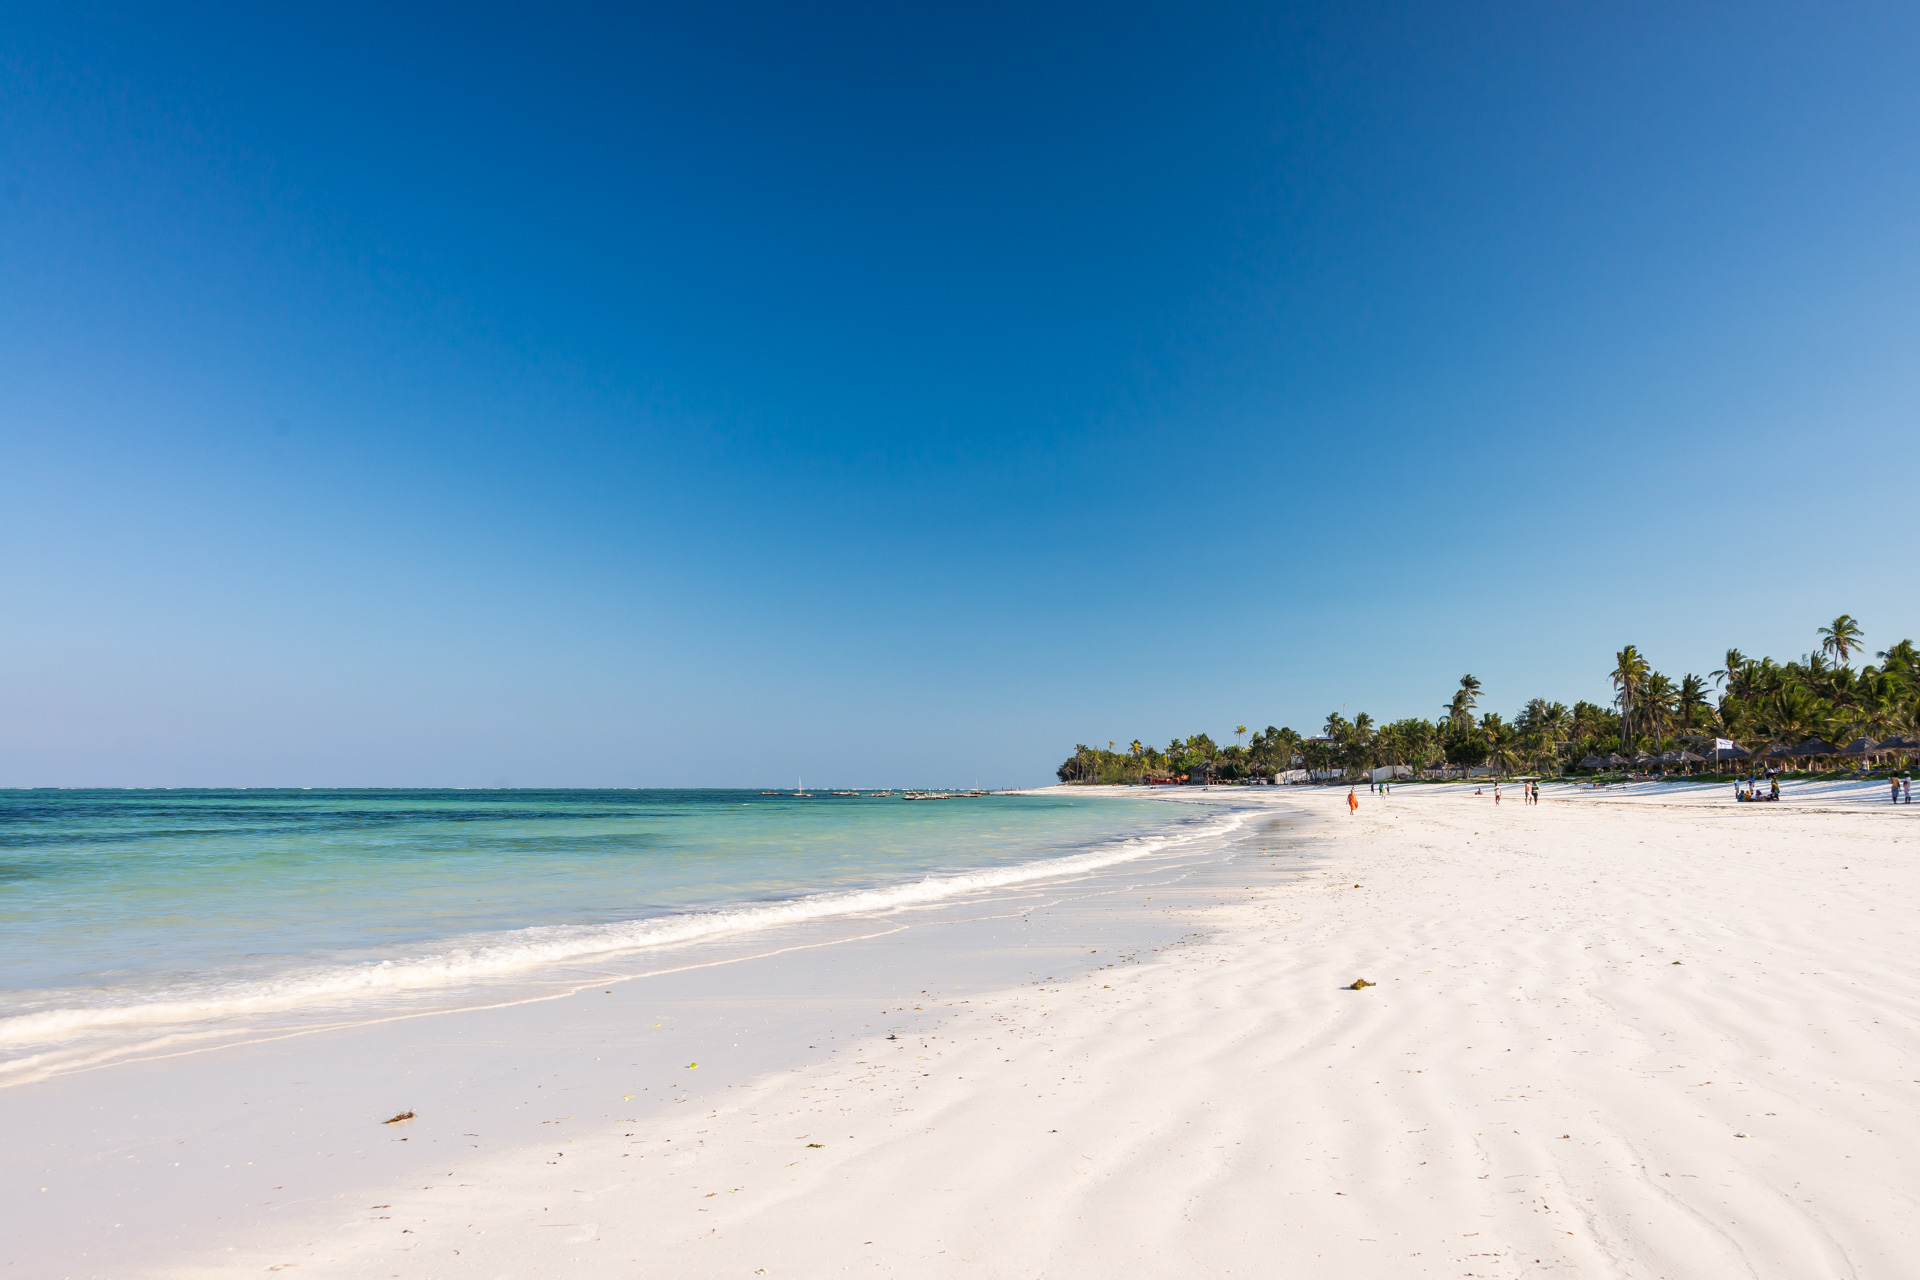 Endeløs hvid sandstrand med palmer og turkisblåt vand